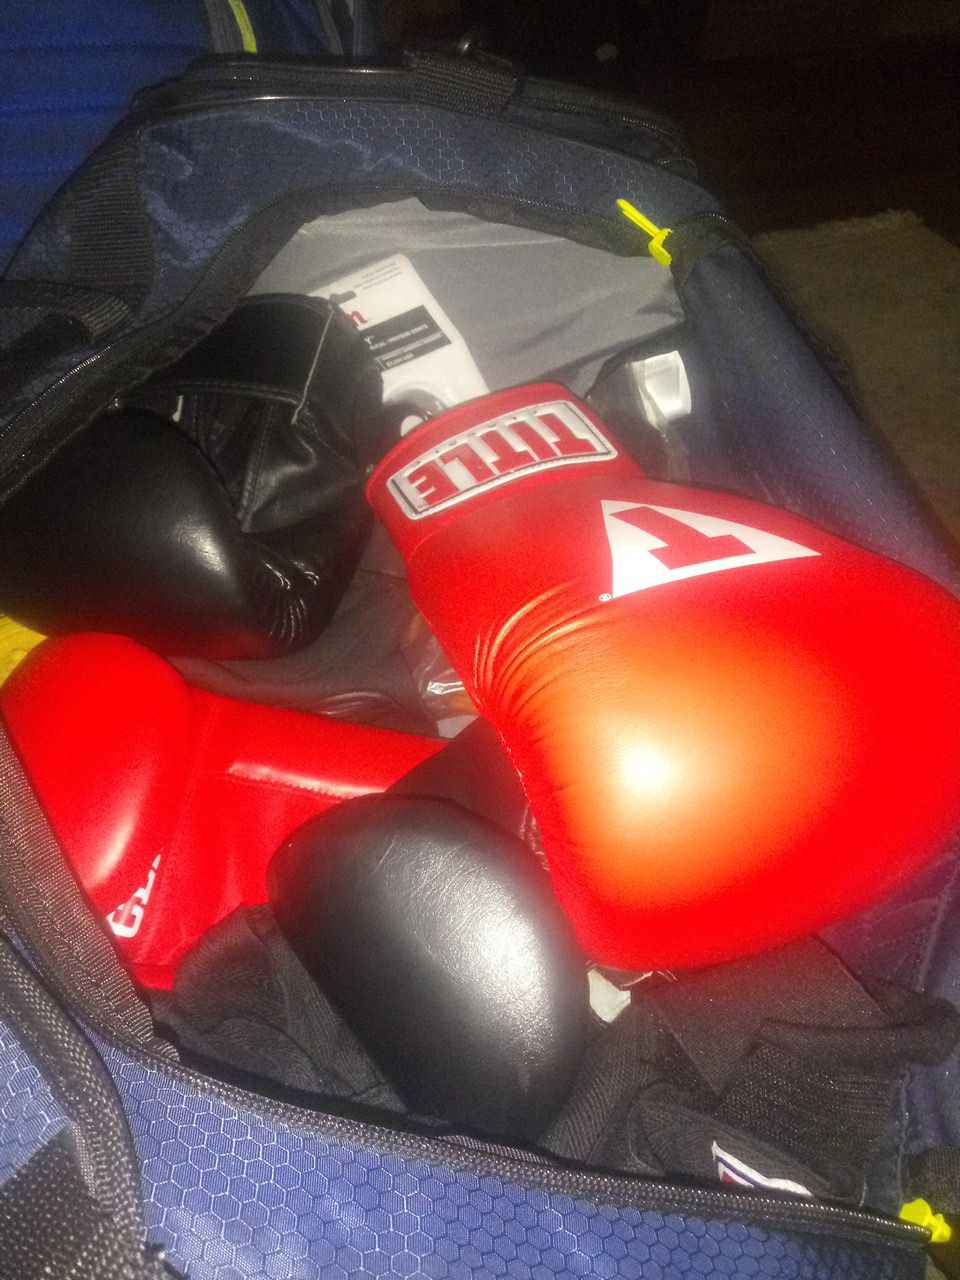 Gym bag full of boxing equipment